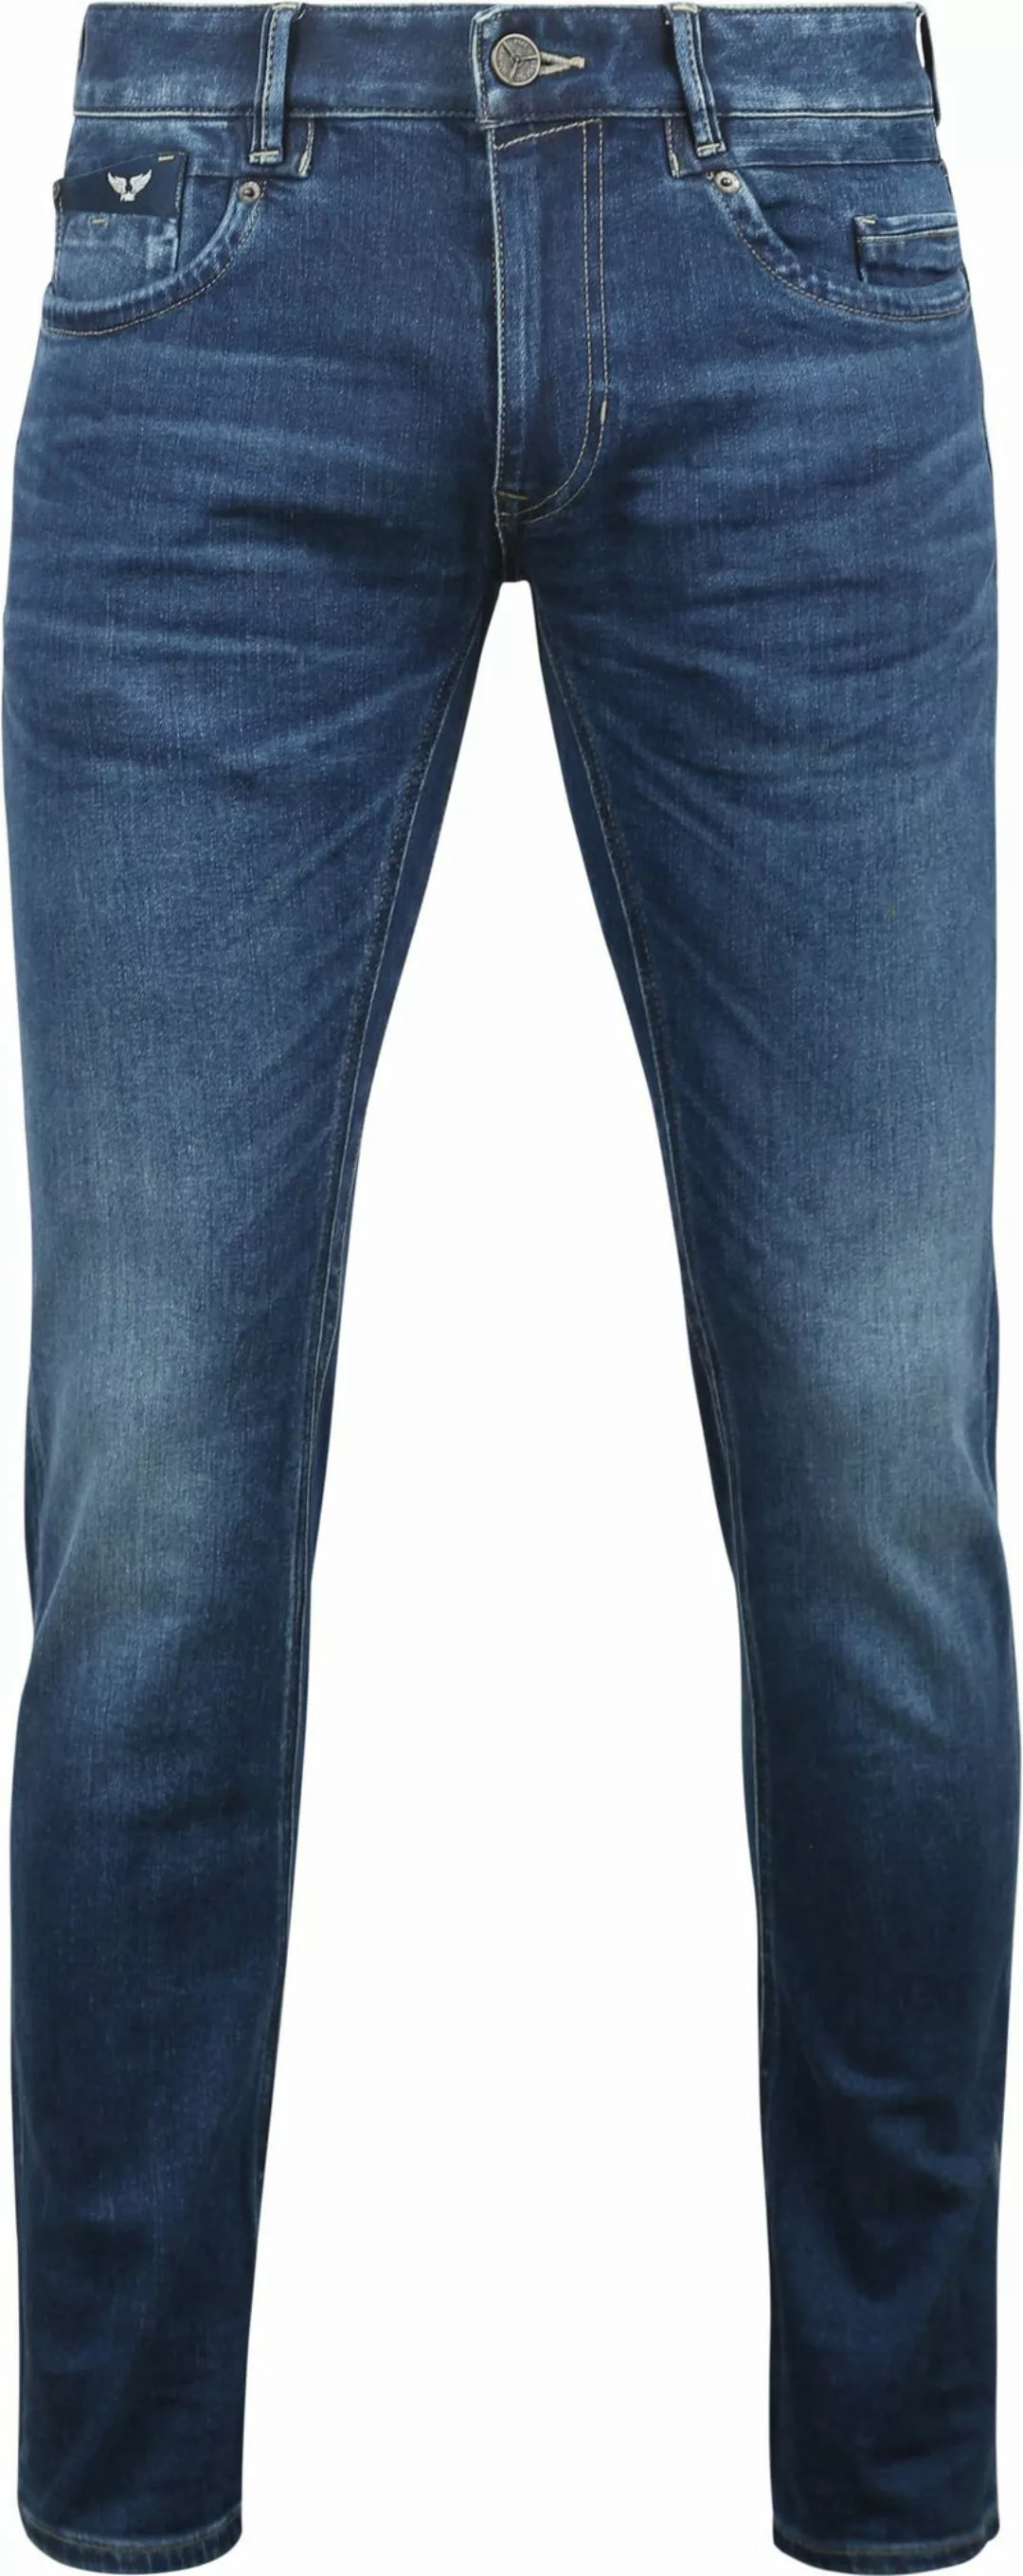 PME Legend Commander 3.0 Jeans Blau TBM - Größe W 36 - L 30 günstig online kaufen